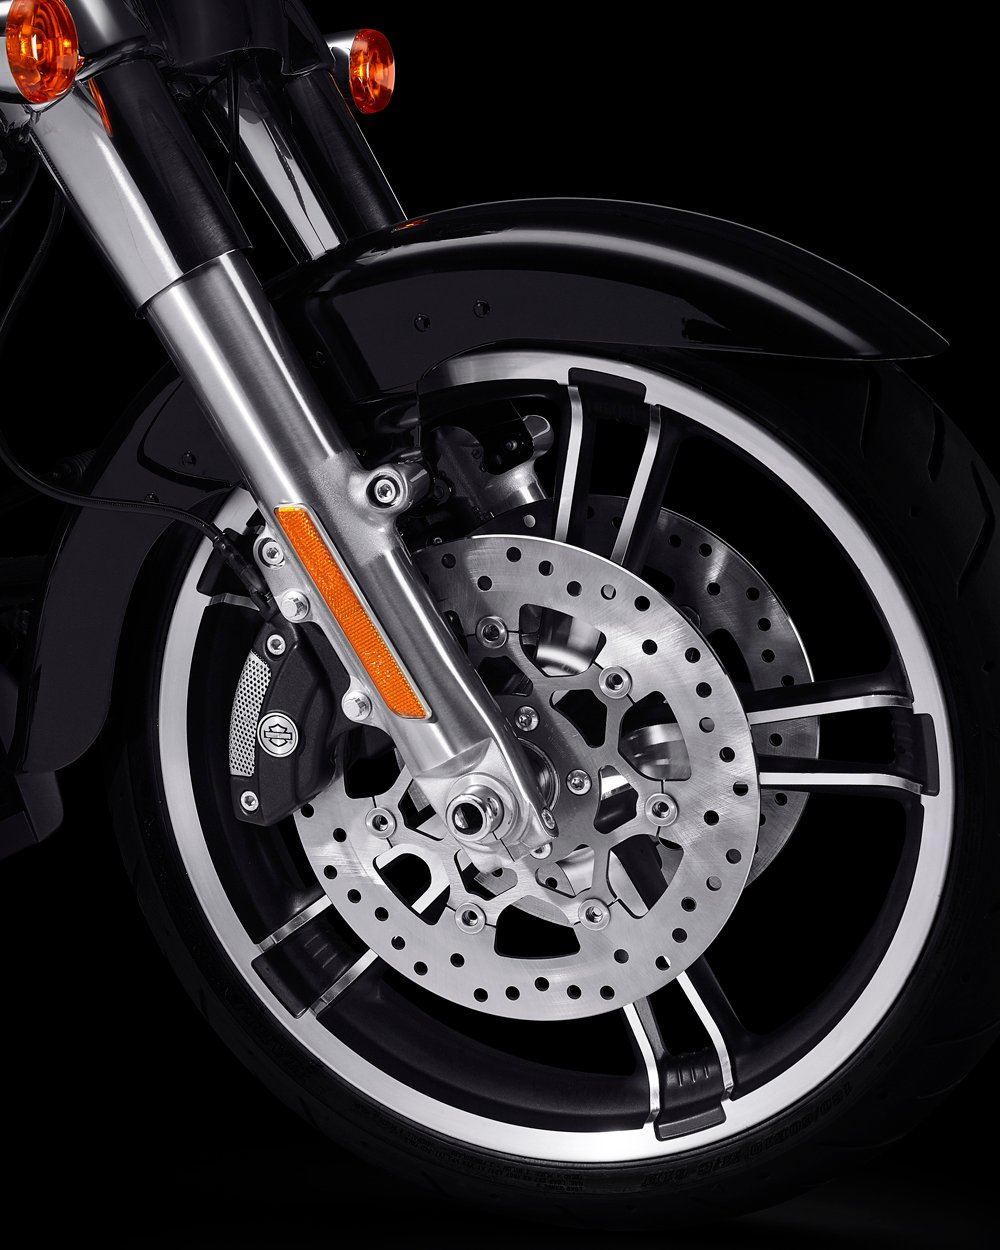 Enforcer-hjul i støbt aluminium på en 2022 Freewheeler motorcykel